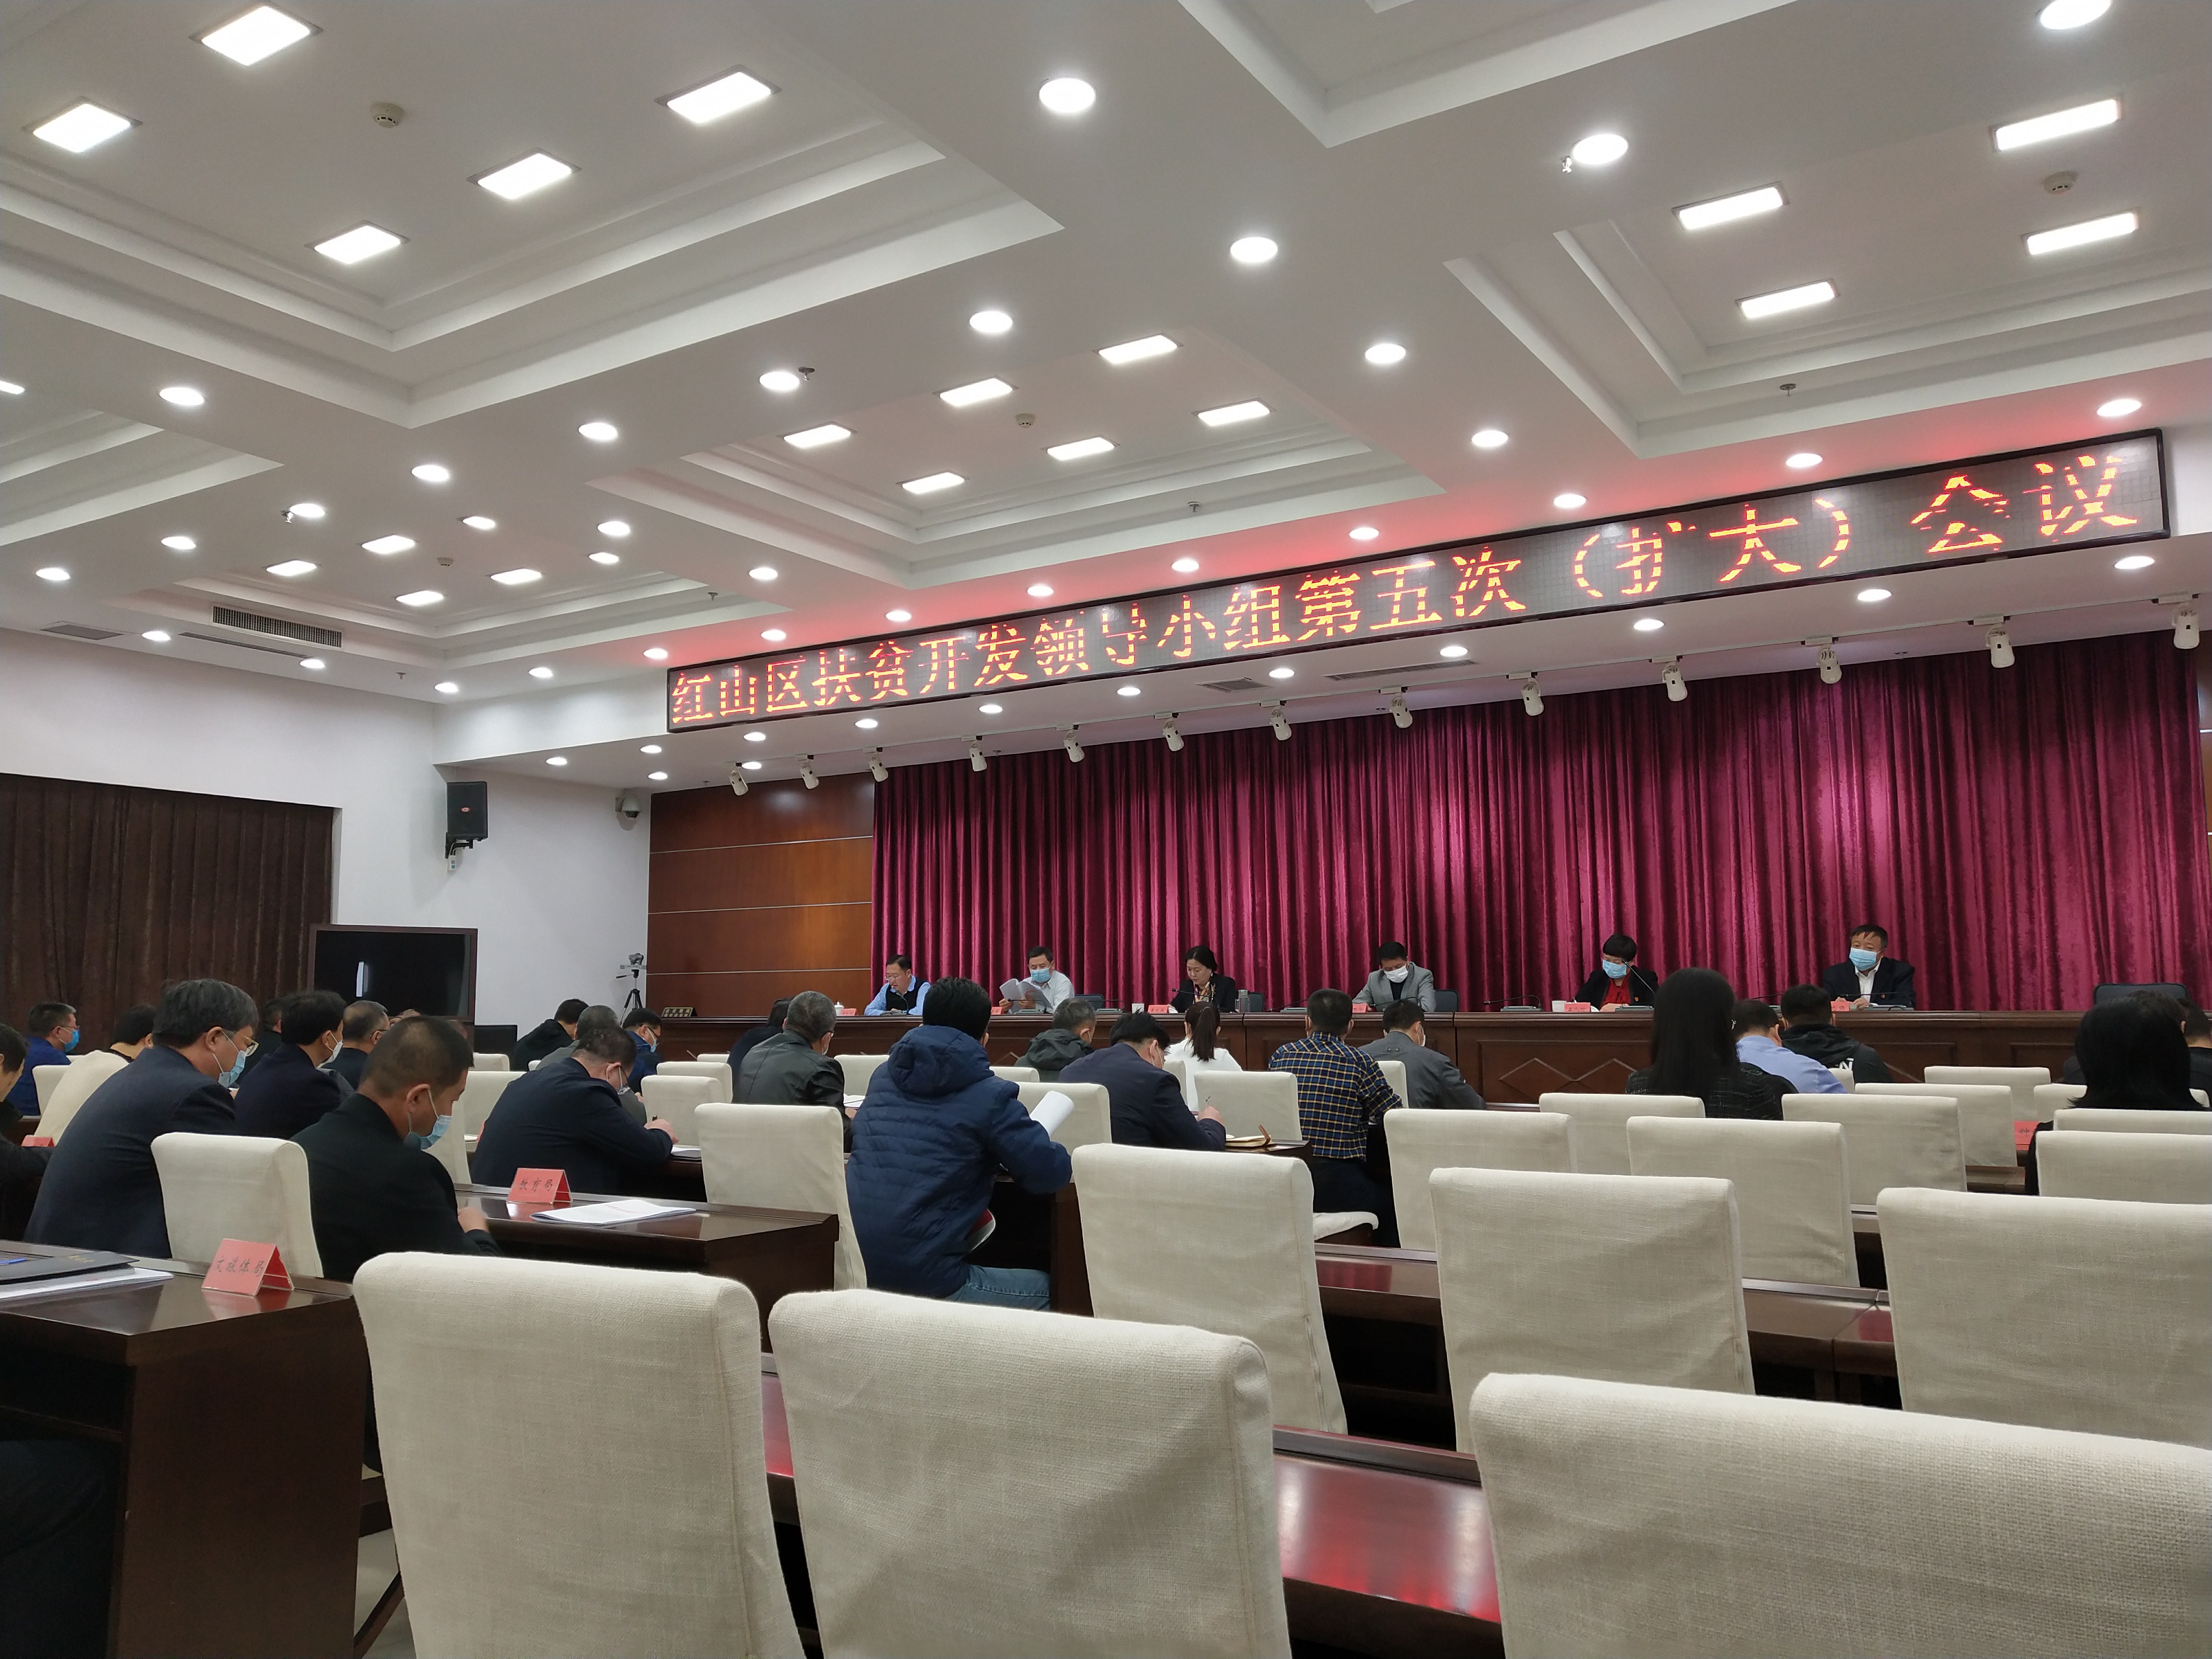 pg电子:重磅消息:中共东北大学第十四届委员会常务委员会第95次会议